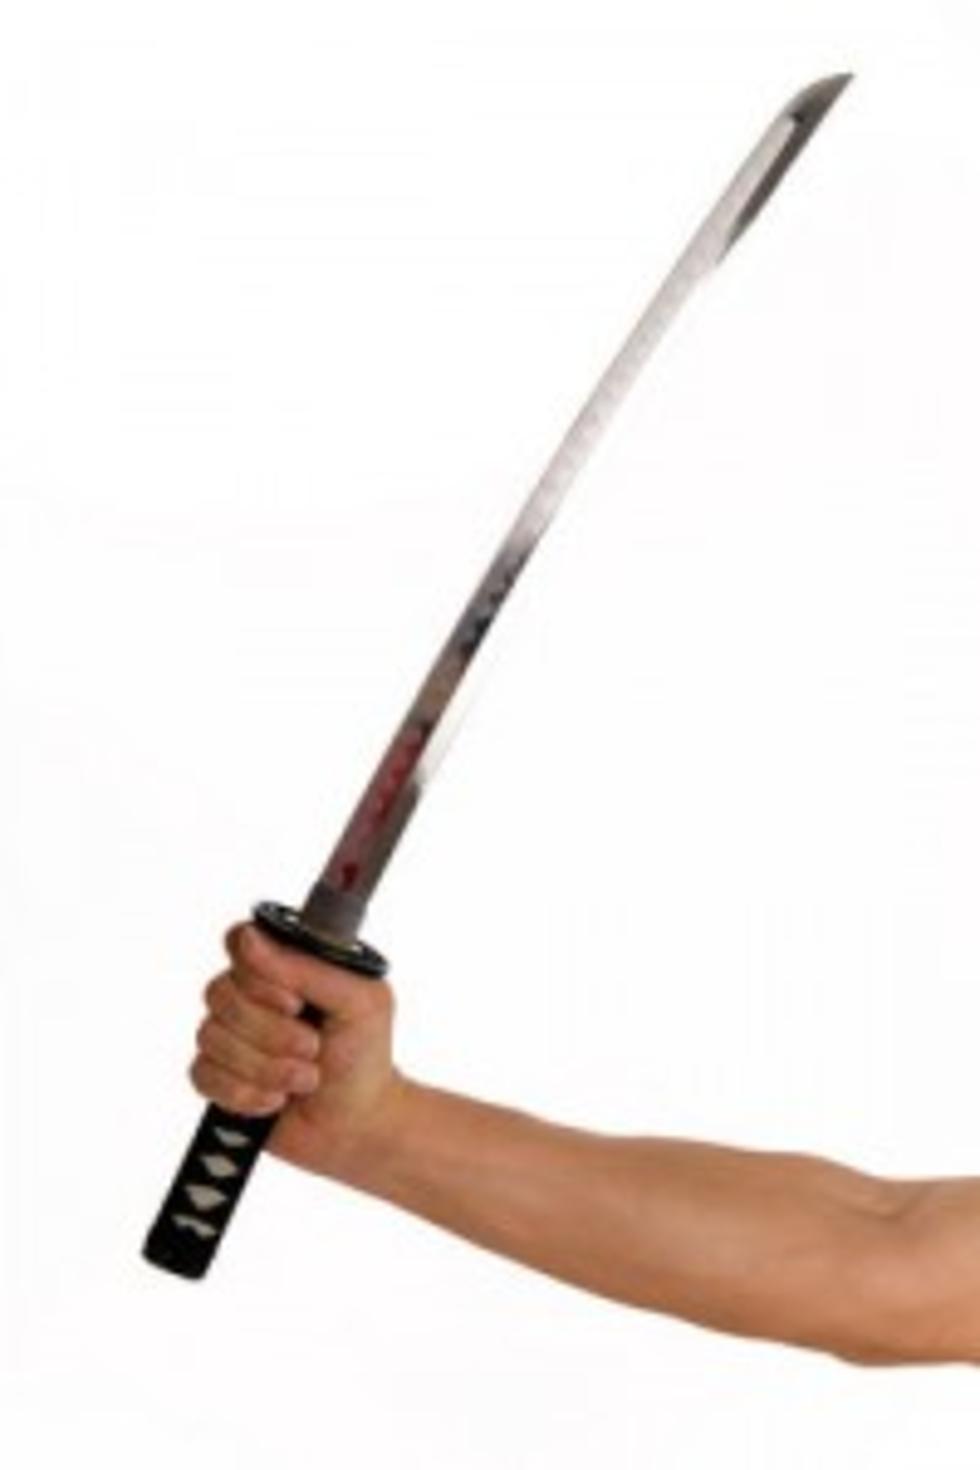 Bizarre Man Threatens a Local Deli With a Samurai Sword [VIDEO]